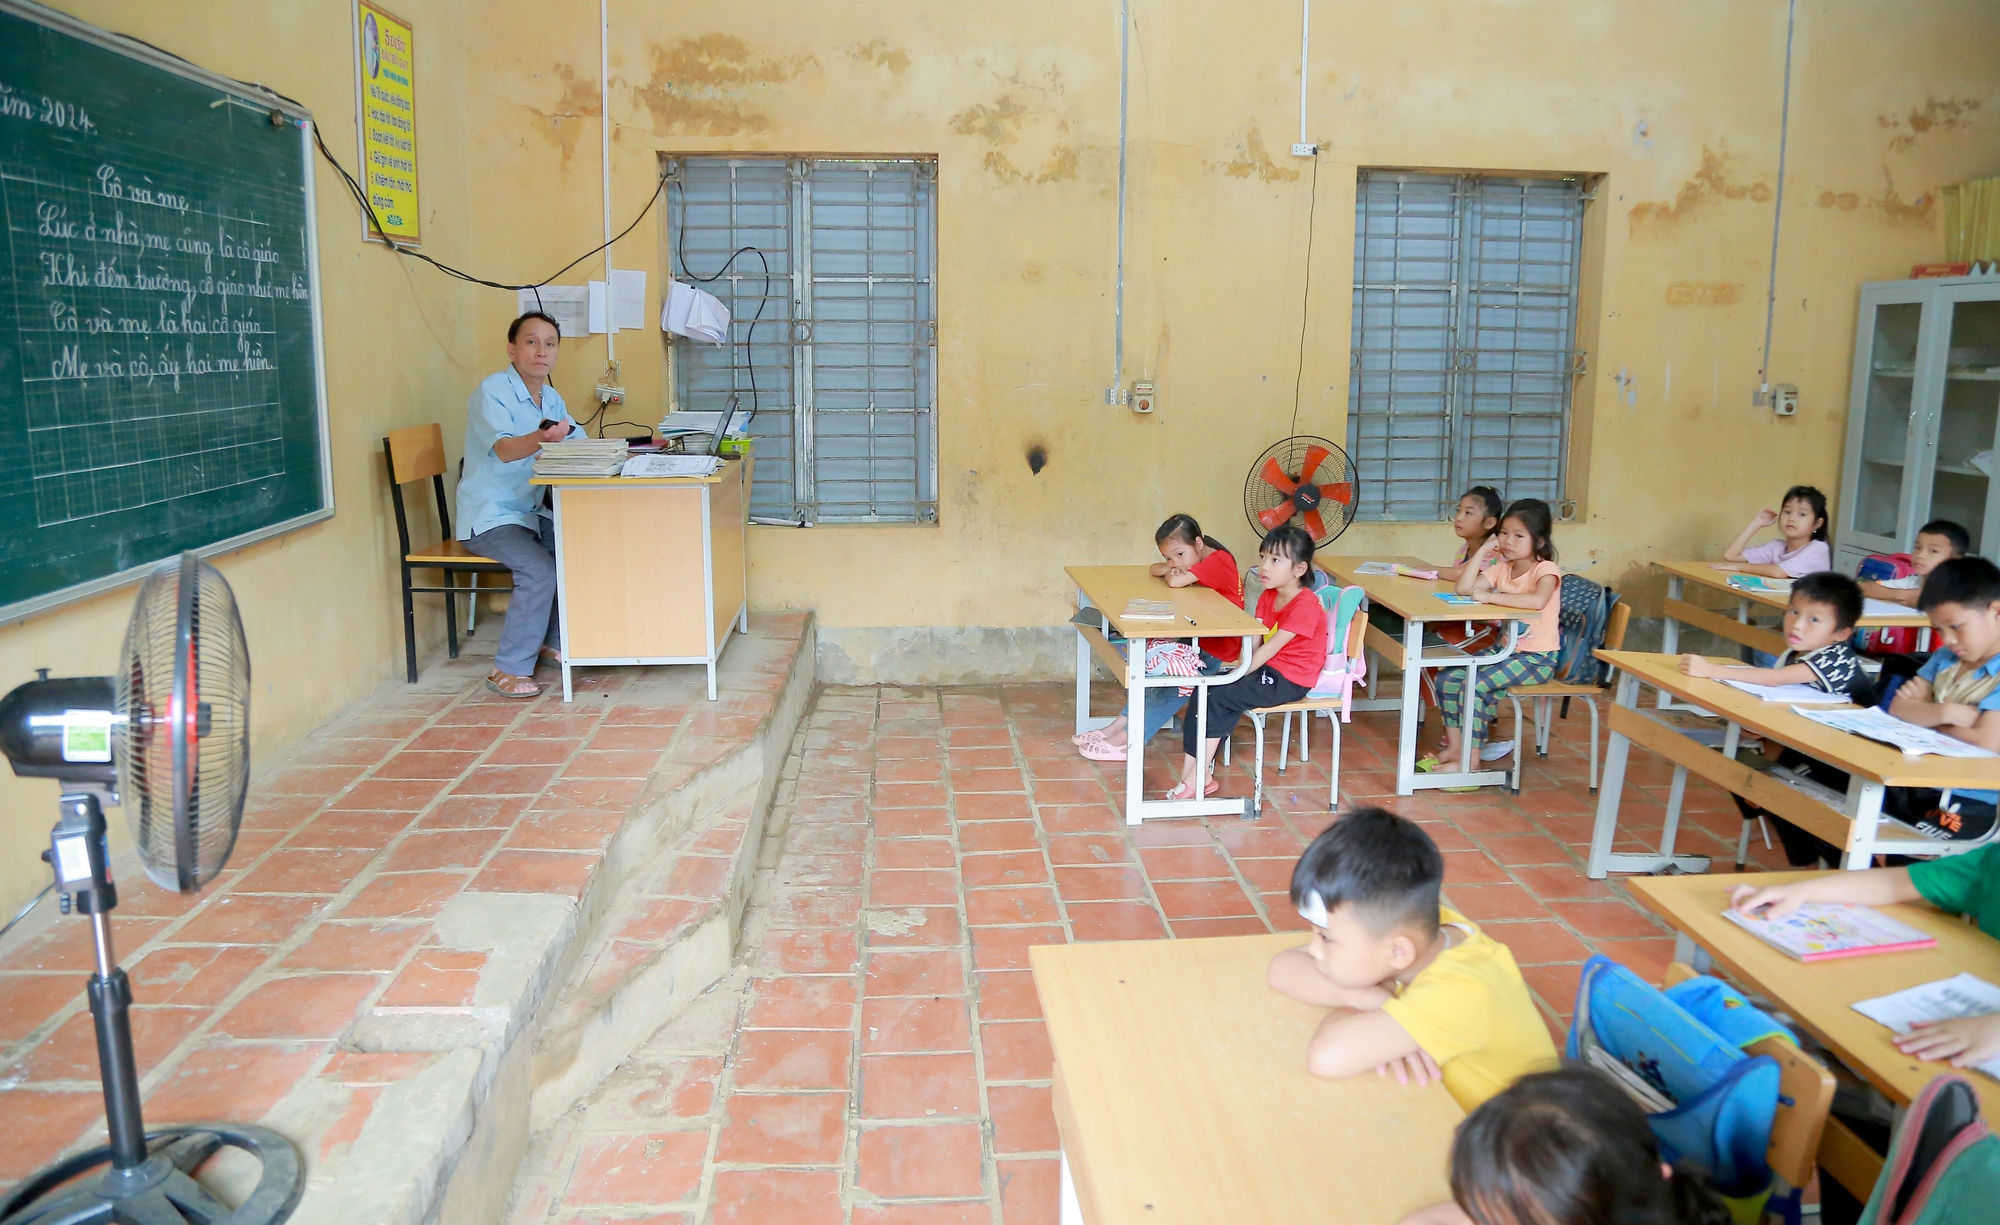 Con đèo đẹp như phim ở Phú Thọ, vượt qua bên kia thấy trẻ em được học hành như ở thành phố- Ảnh 3.